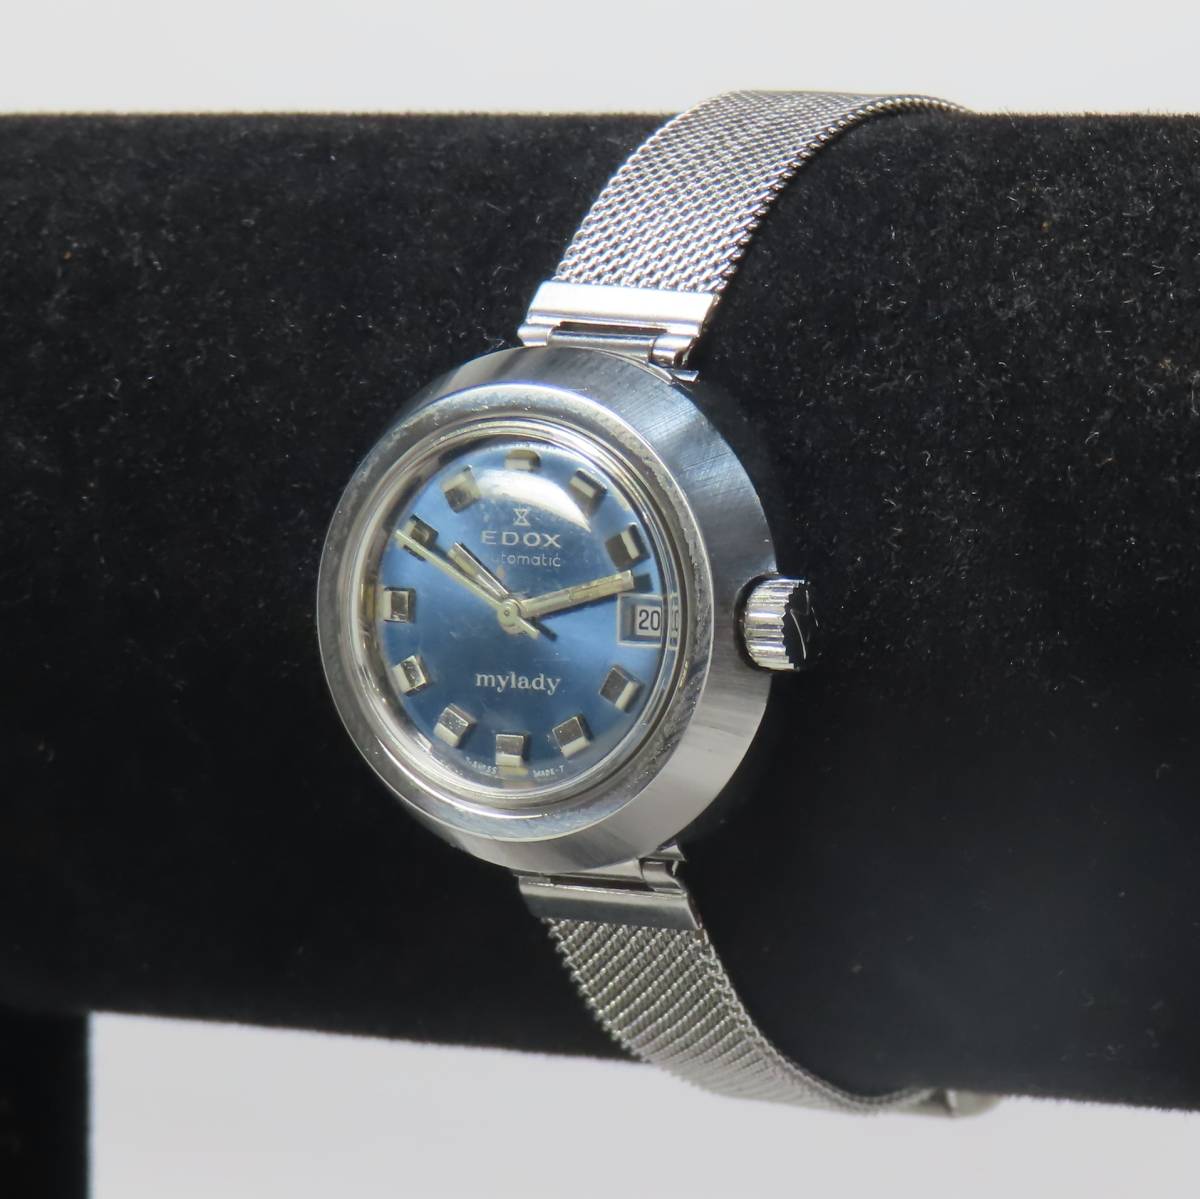  работа товар EDOX mylady Ed ks мой reti самозаводящиеся часы автоматический наручные часы женский 200317 новый товар неоригинальный нержавеющая сталь частота 